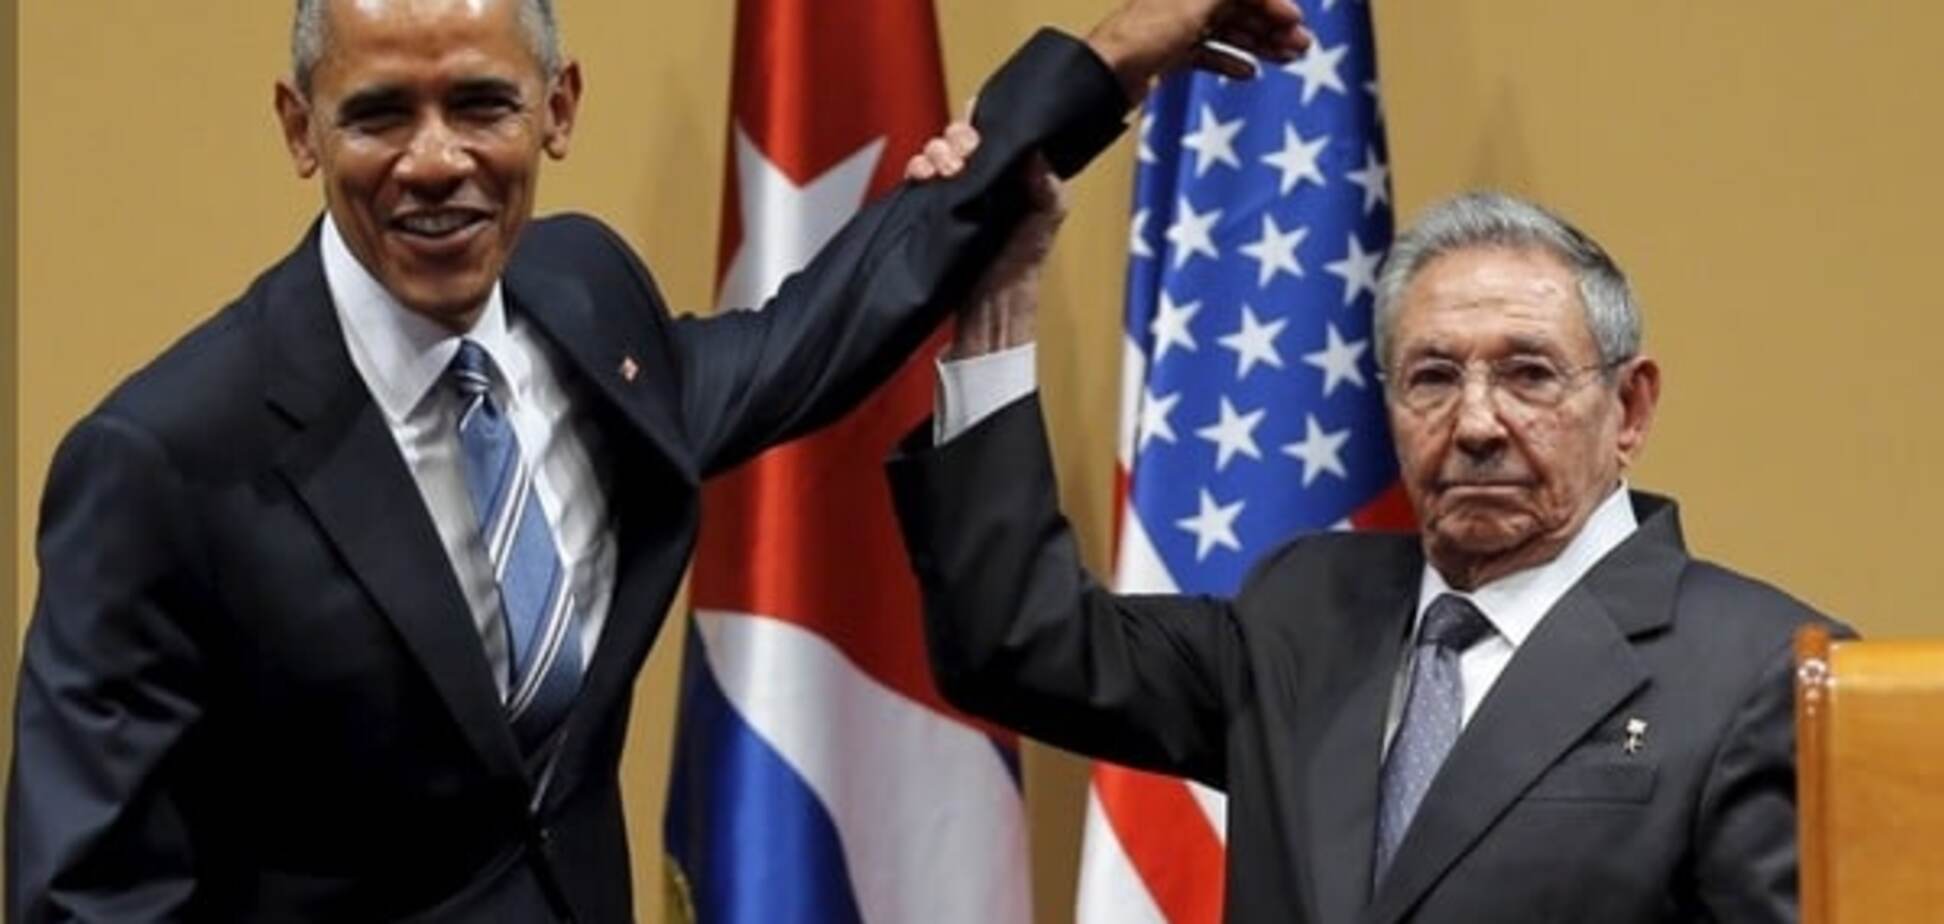 Неловкий конфуз: Кастро не дал Обаме похлопать себя по плечу. Опубликовано видео